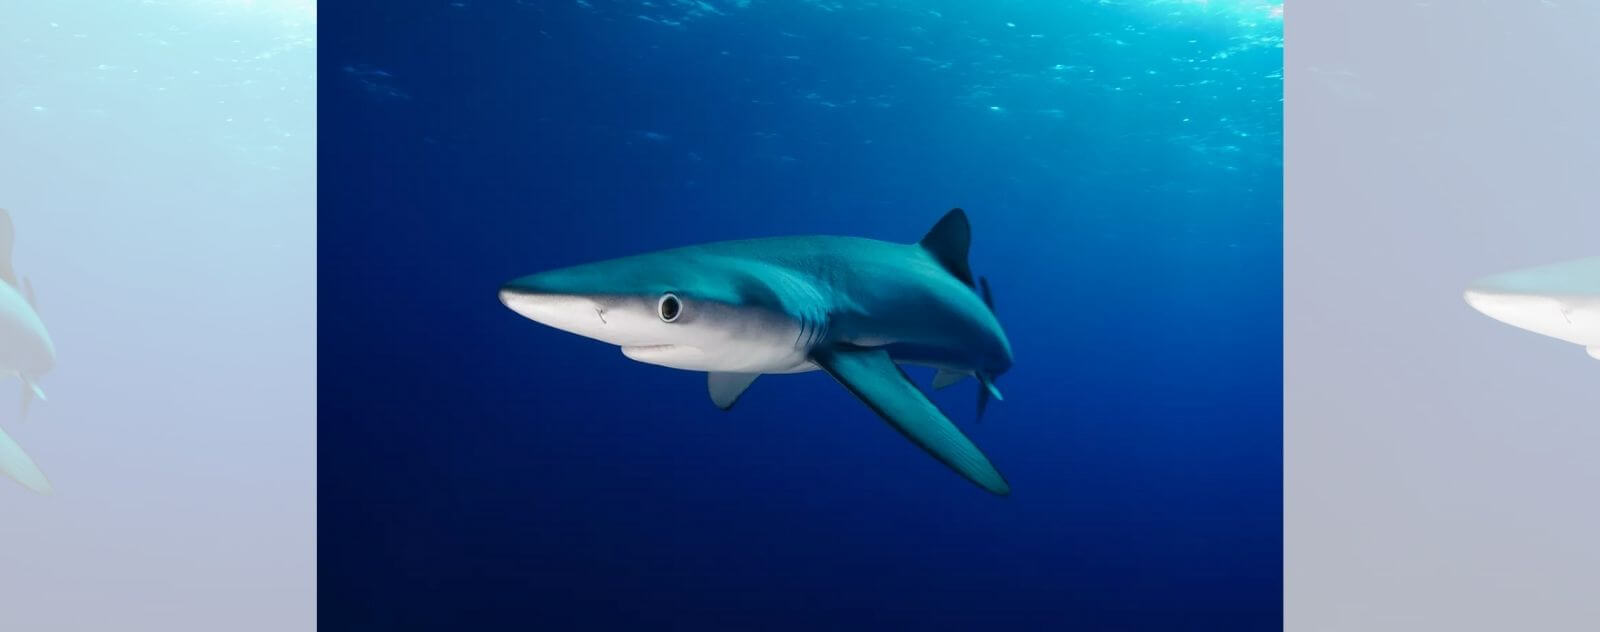 Tiburón azul en el mar rodeado de agua oscura